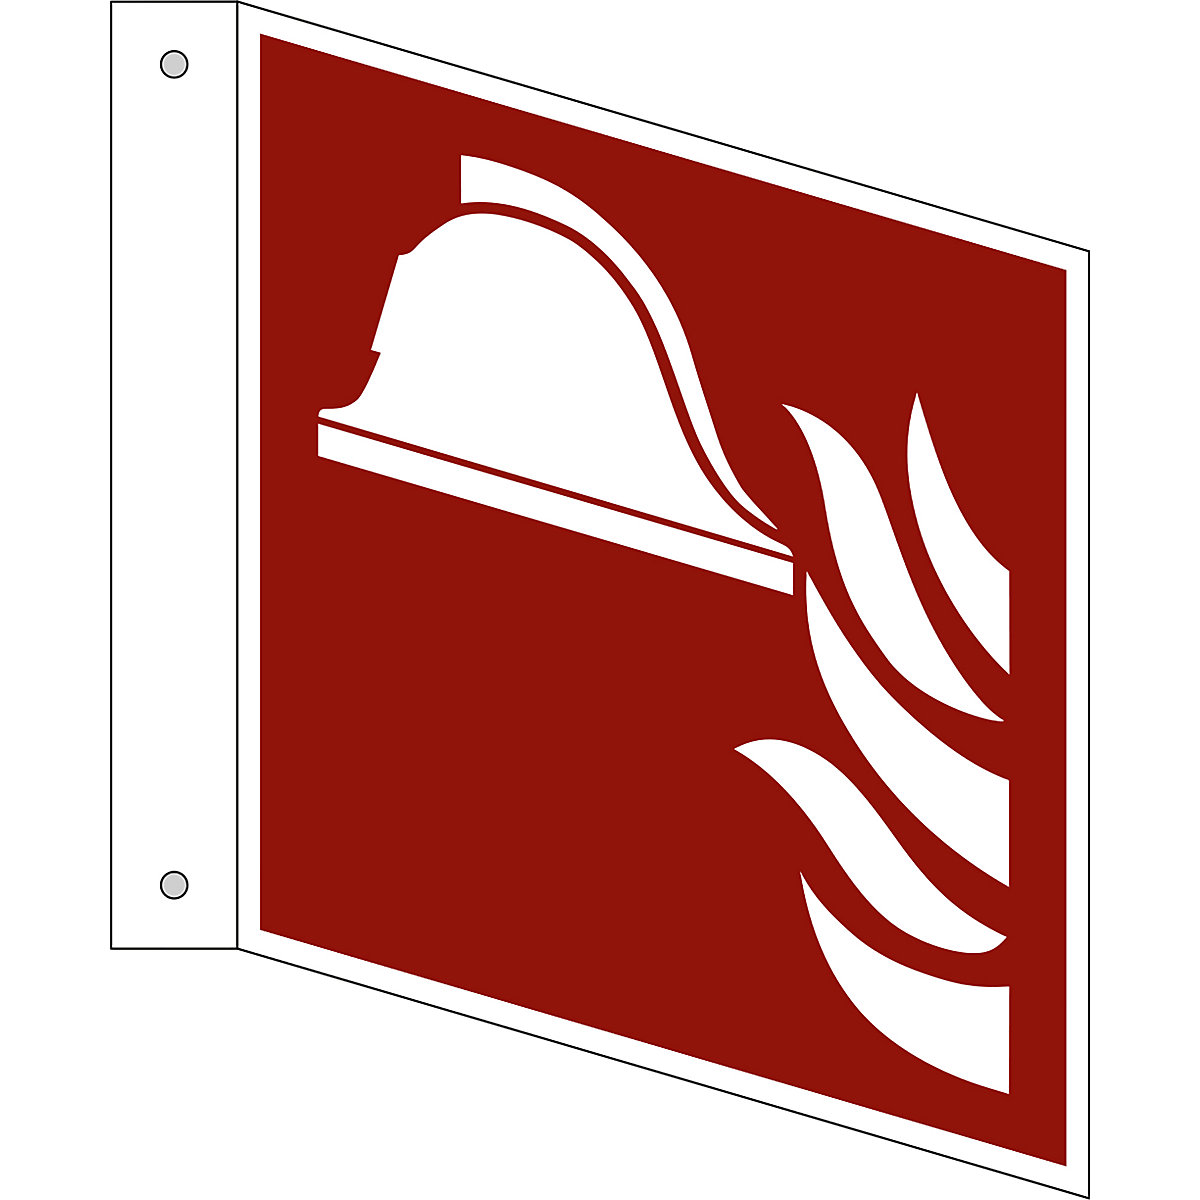 Značka pro ochranu proti požáru, prostředky a přístroje pro hašení požáru, bal.j. 10 ks, plast, vlajkový štítek, 150 x 150 mm